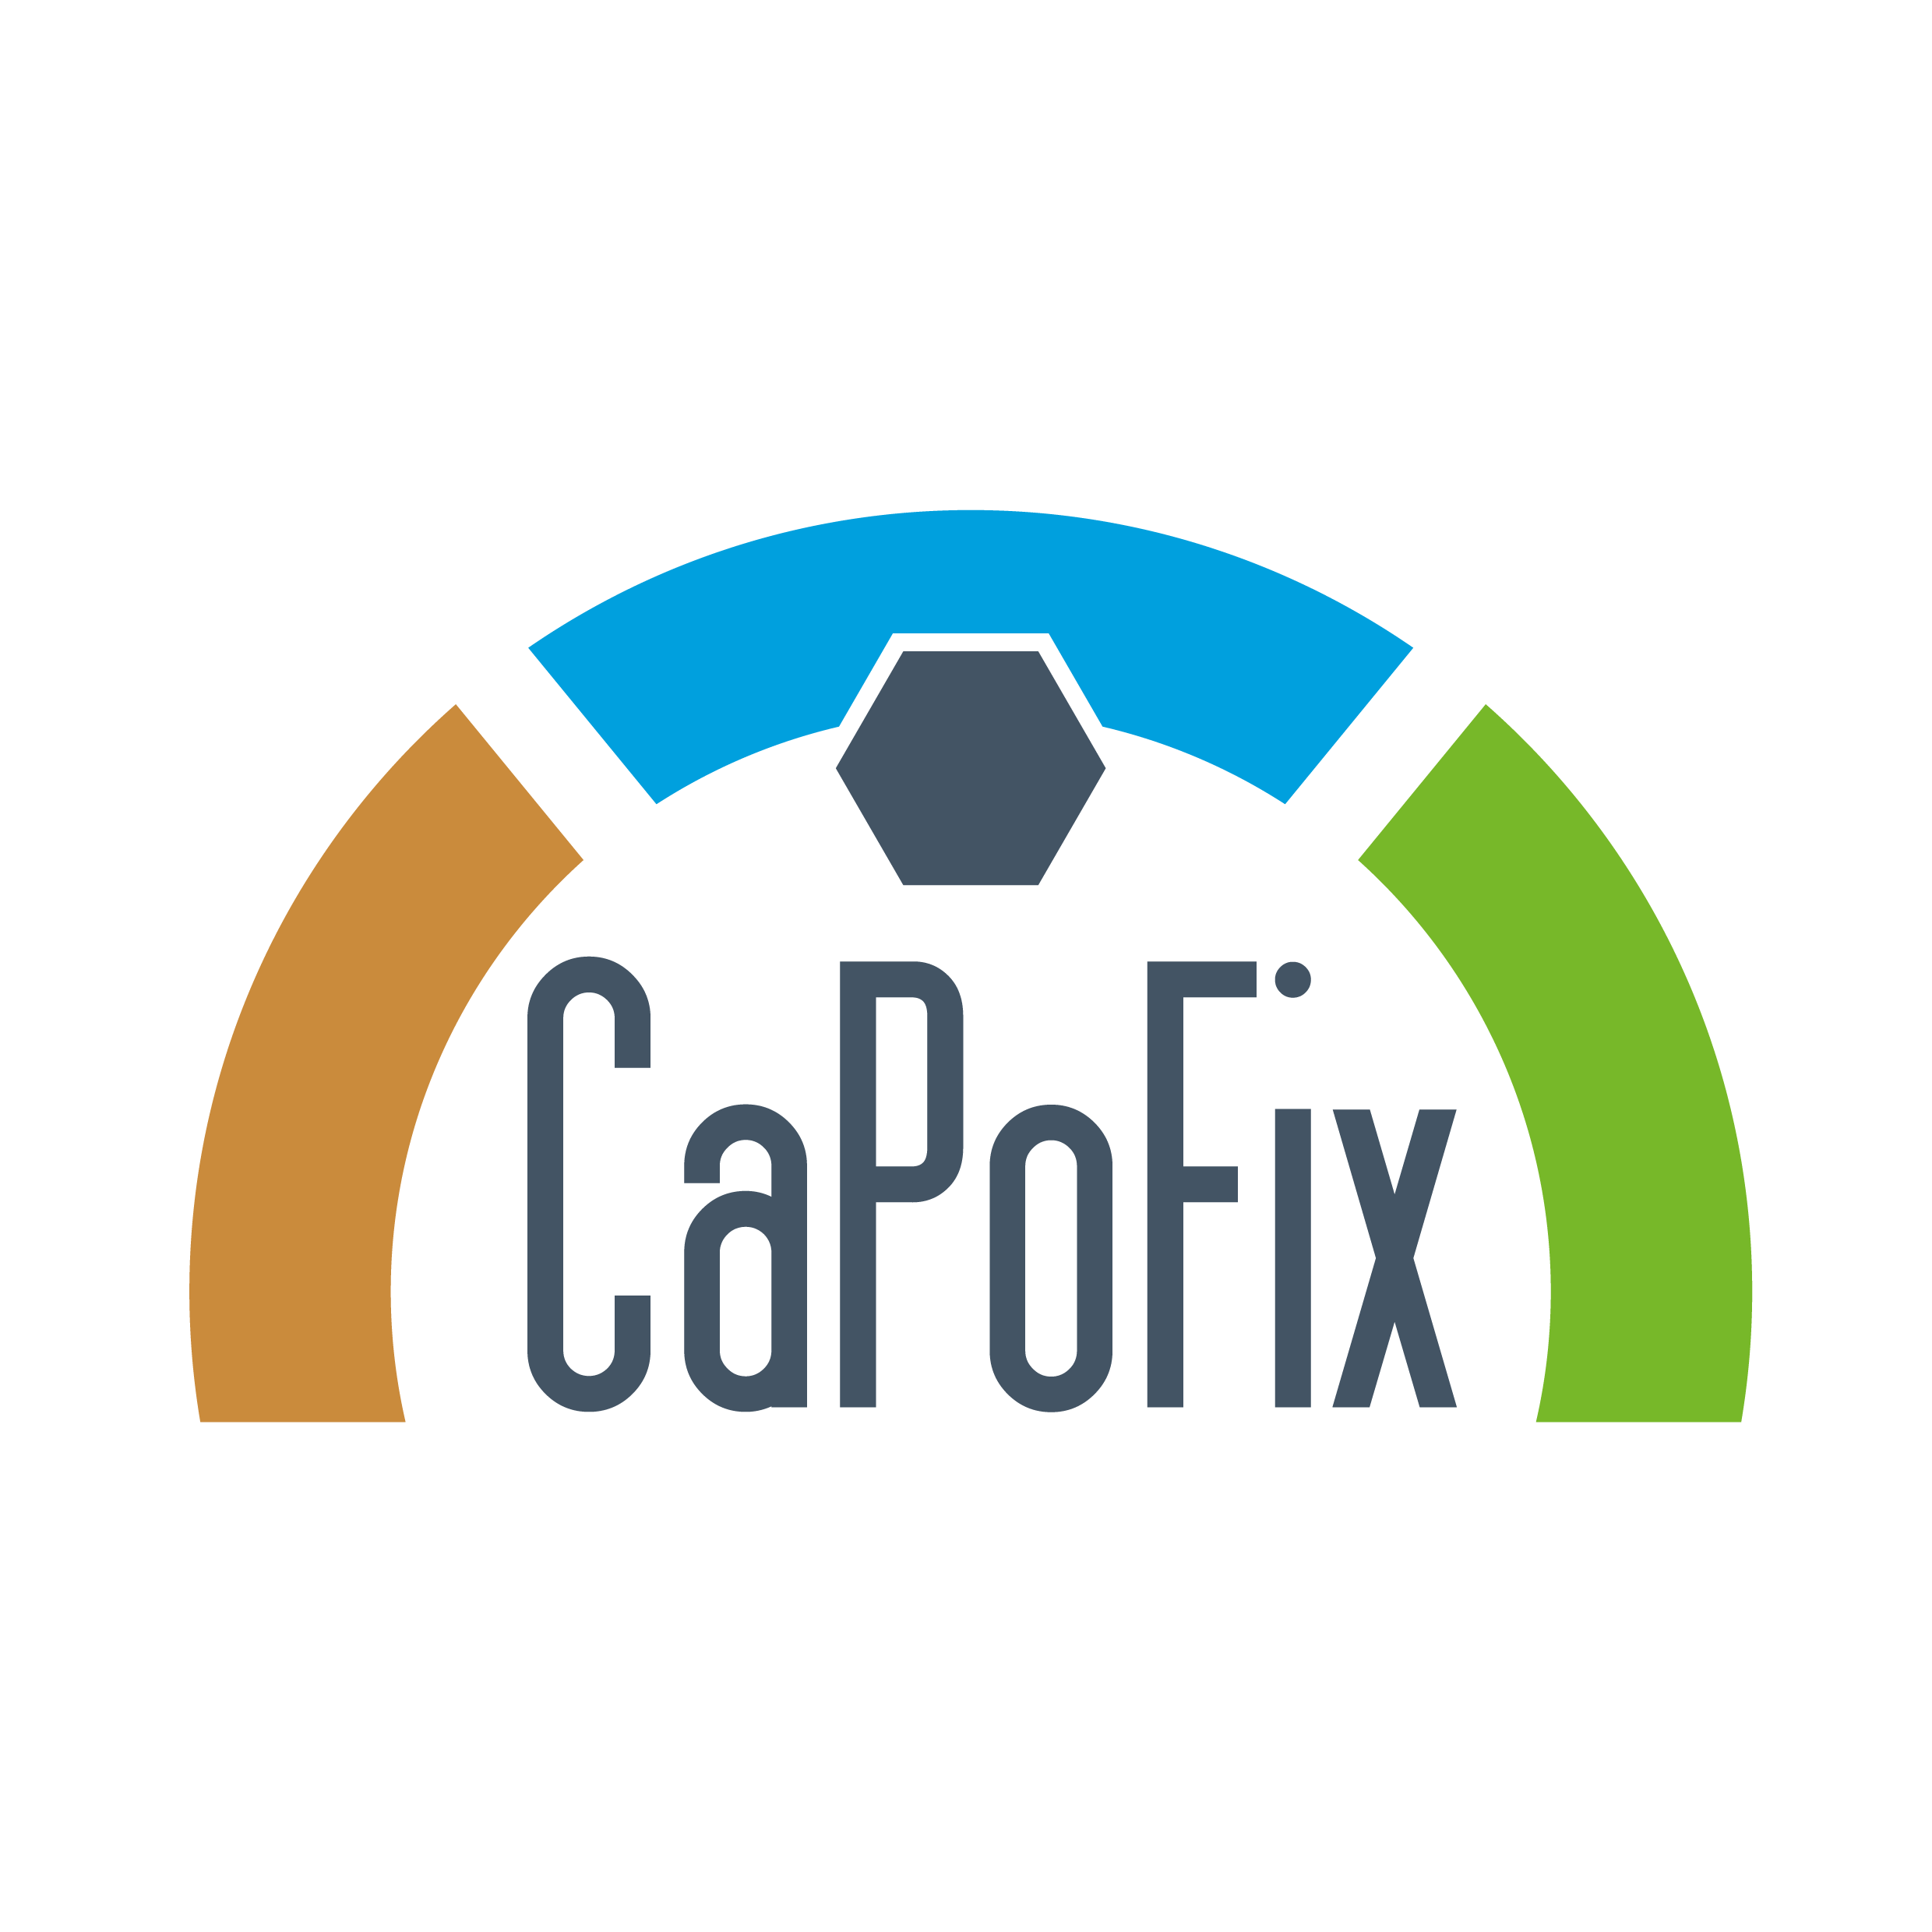 Capofix - Bauen Sie Ihren Pool selber